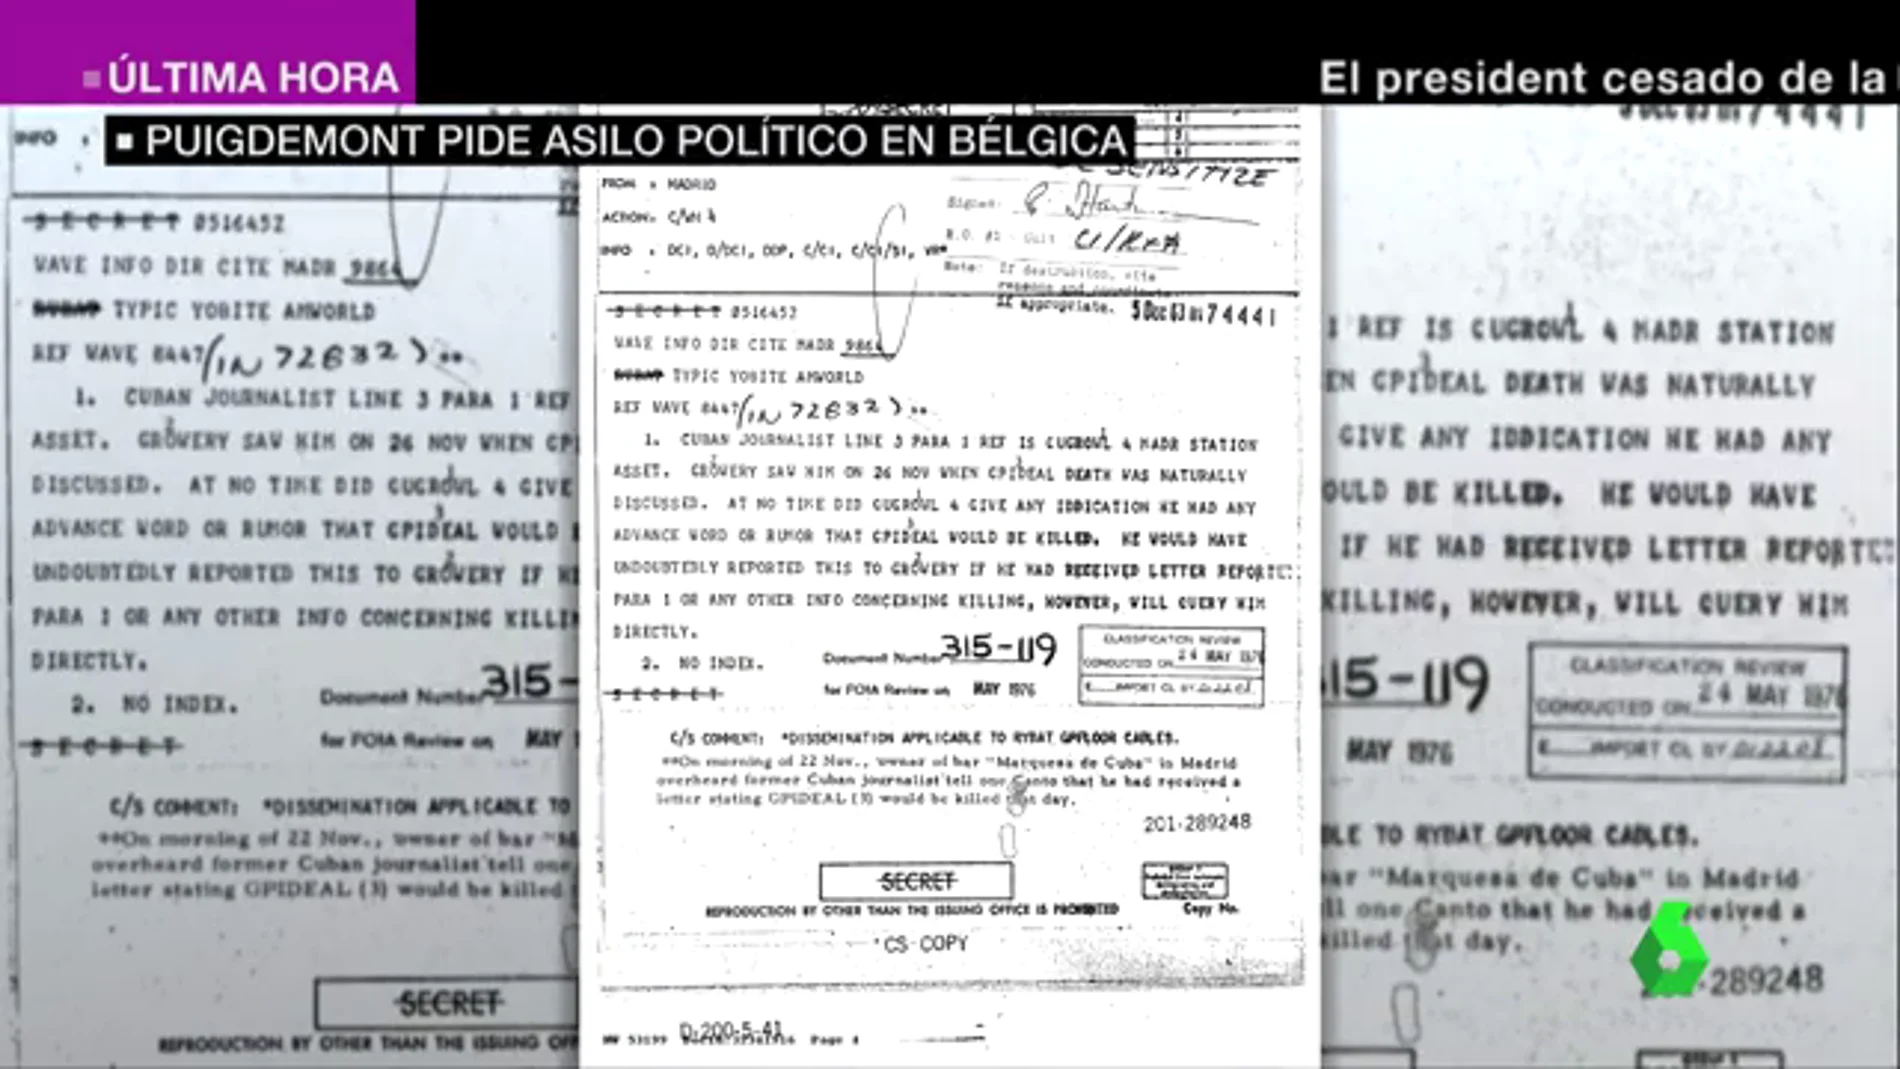 Los archivos desclasificados por el asesinato de Kennedy desvelan que la muerte del presidente se anticipó en Madrid. La dueña de un bar escuchó decir que asesinarían Kennedy el 22 de noviembre, como así sucedió